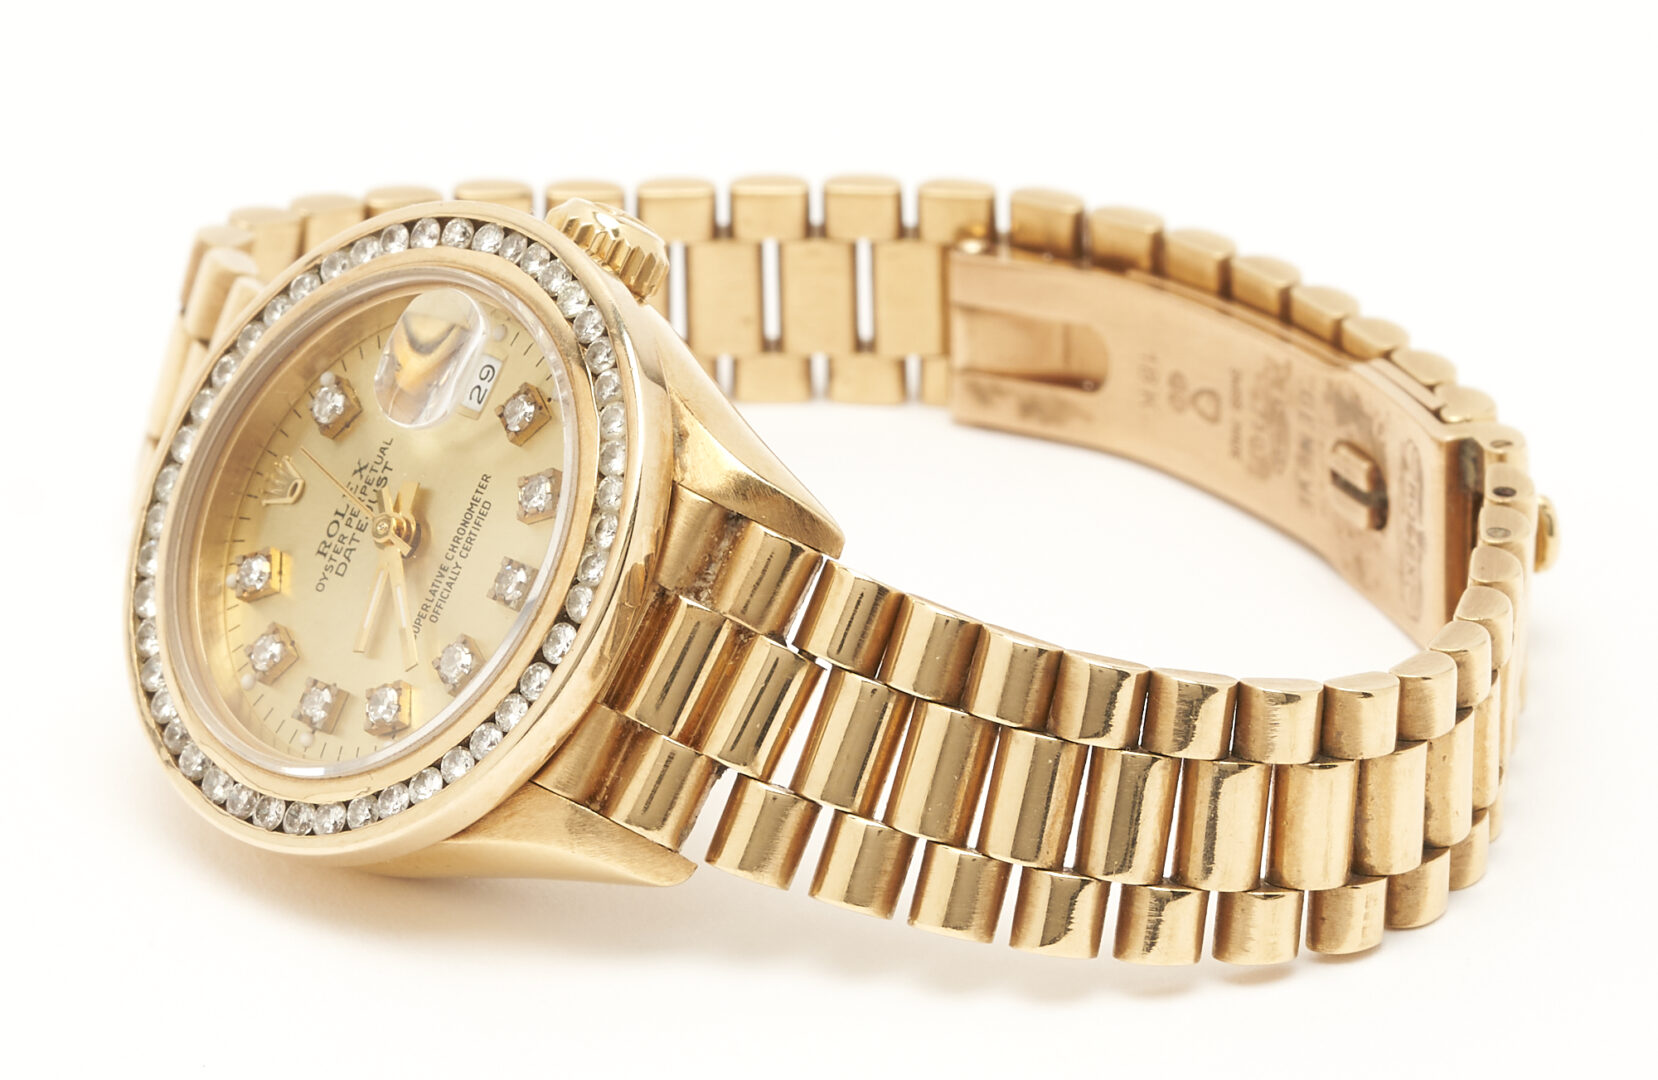 Lot 38: Ladies Datejust 18K Gold Rolex Watch